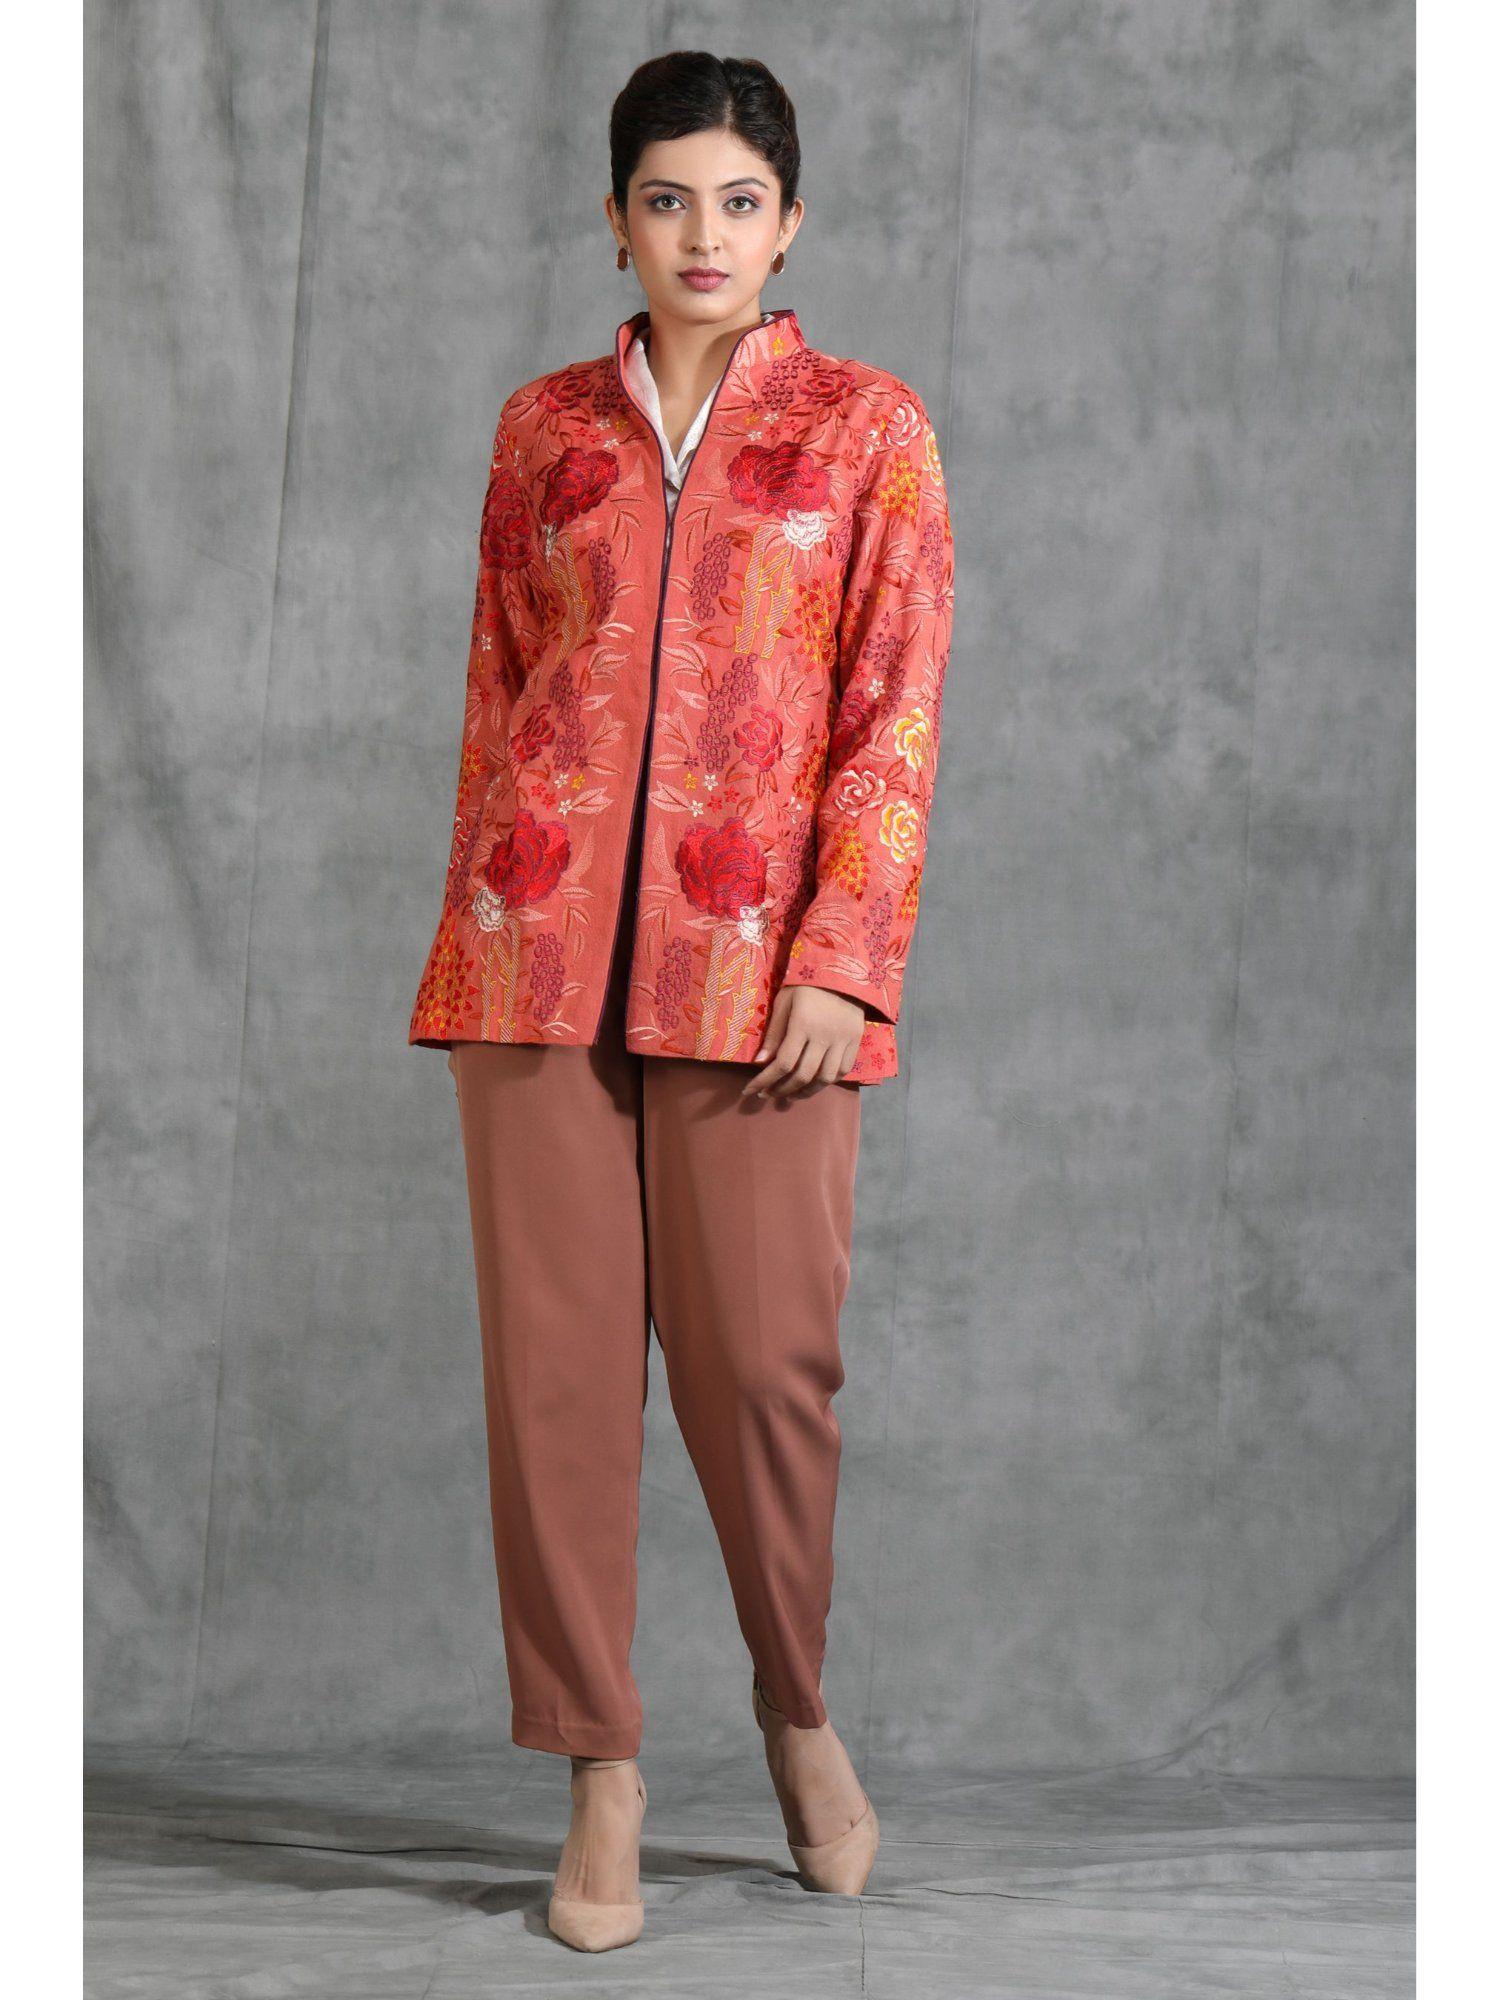 handwoven pashmina vintage jacket with floral design